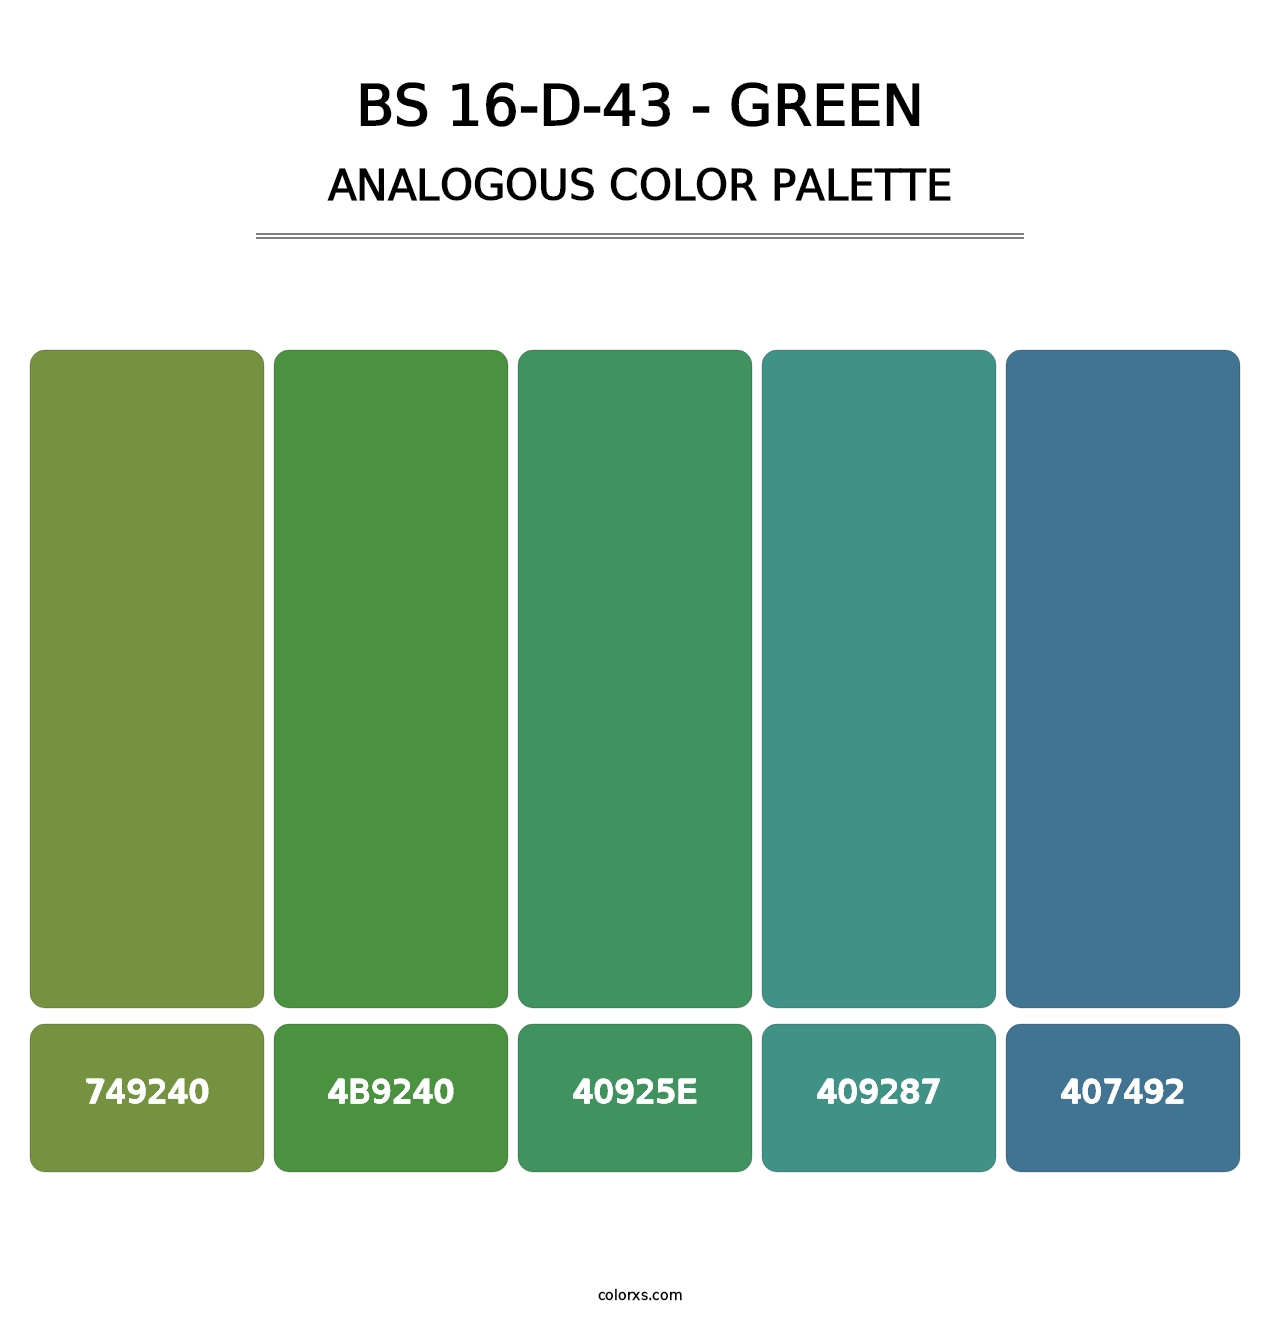 BS 16-D-43 - Green - Analogous Color Palette